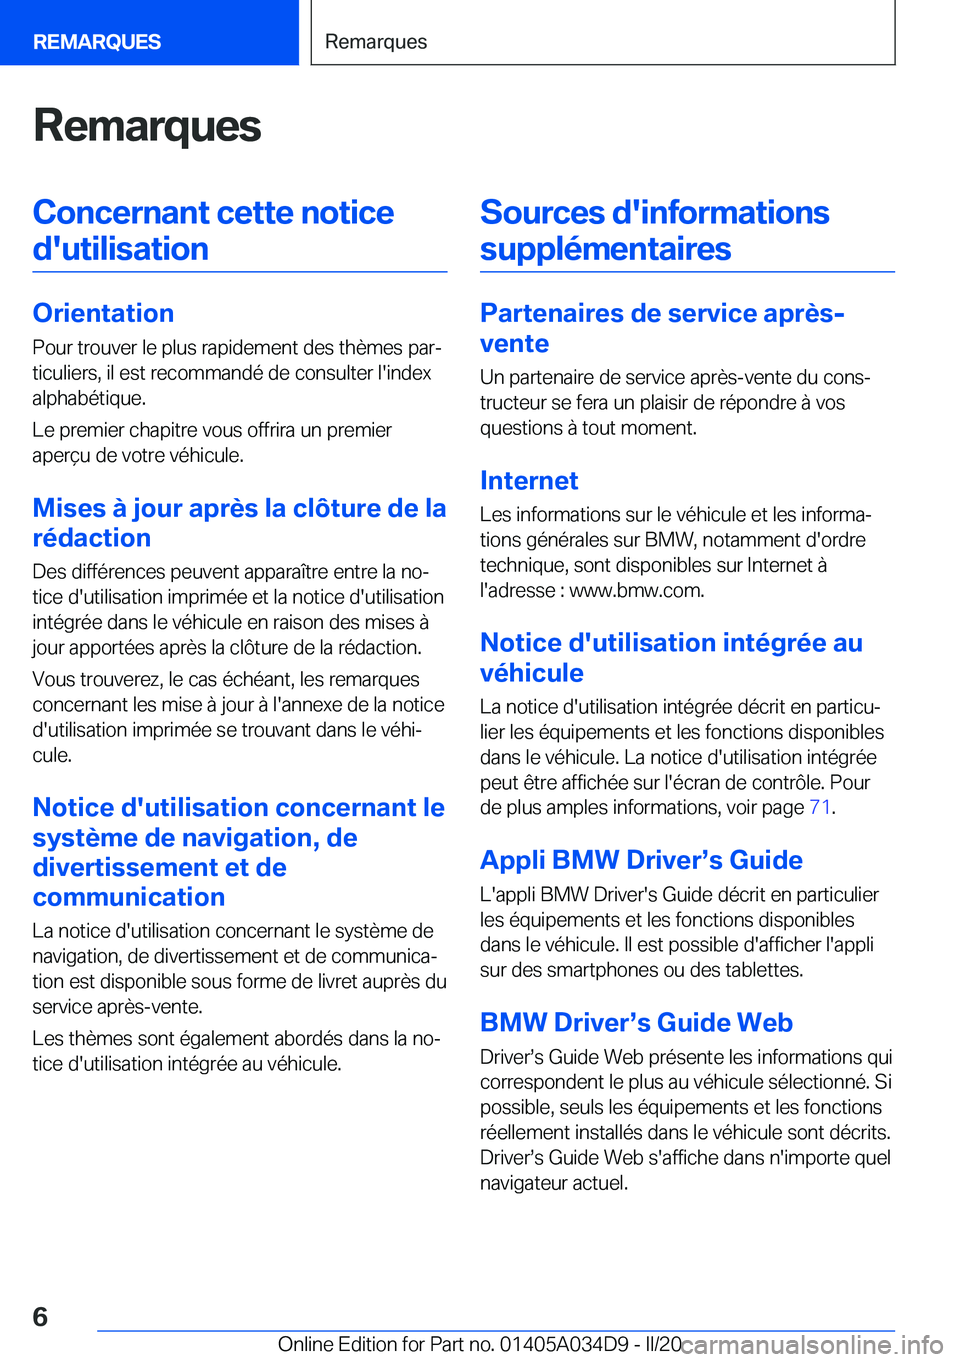 BMW X3 2020  Notices Demploi (in French) �R�e�m�a�r�q�u�e�s�C�o�n�c�e�r�n�a�n�t��c�e�t�t�e��n�o�t�i�c�e�d�'�u�t�i�l�i�s�a�t�i�o�n
�O�r�i�e�n�t�a�t�i�o�n �P�o�u�r��t�r�o�u�v�e�r��l�e��p�l�u�s��r�a�p�i�d�e�m�e�n�t��d�e�s��t�h�è�m�